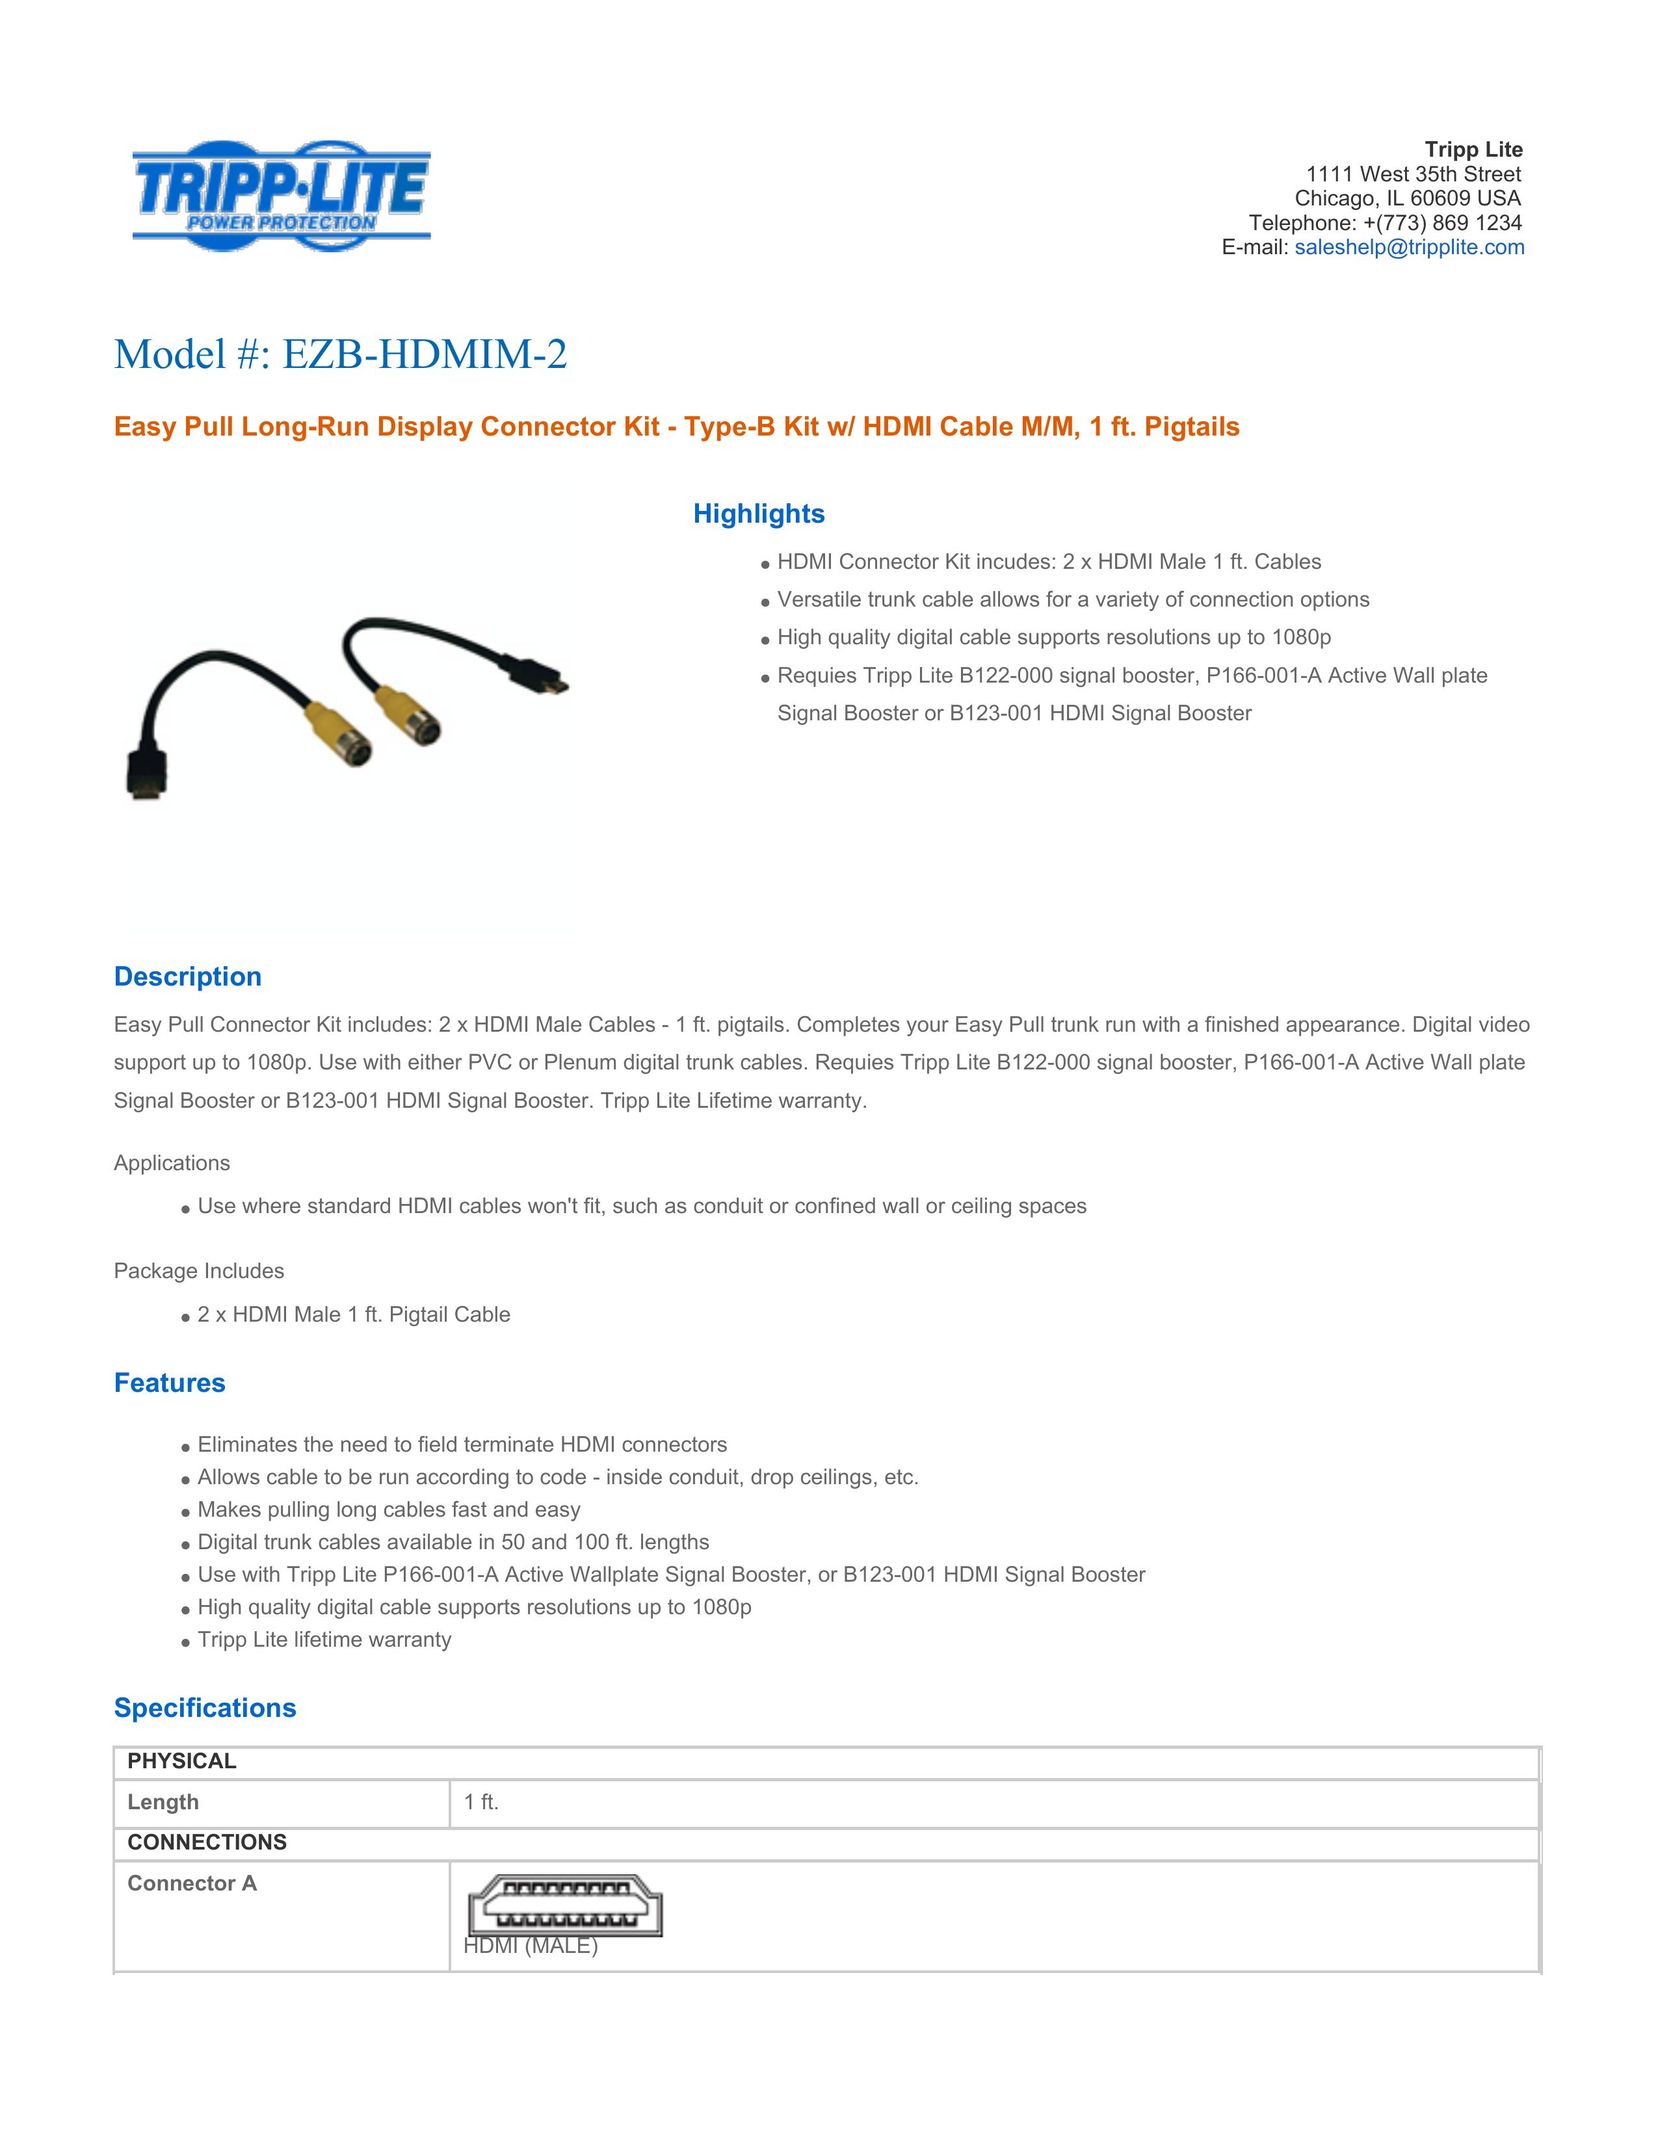 Tripp Lite EZB-HDMIM-2 TV Cables User Manual